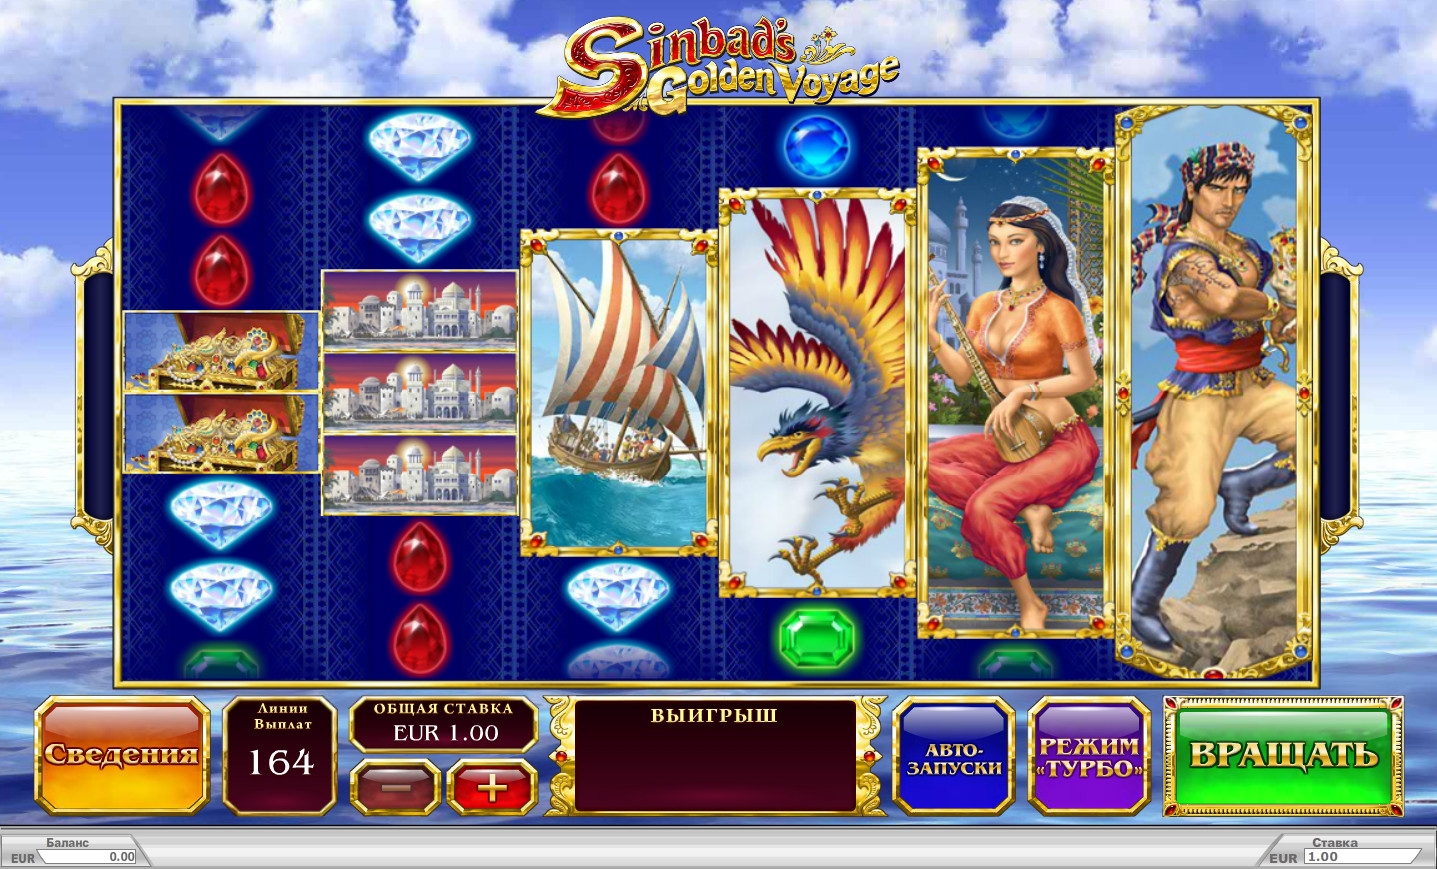 Sinbad’s Golden Voyage (Sinbad’s Golden Voyage) from category Slots